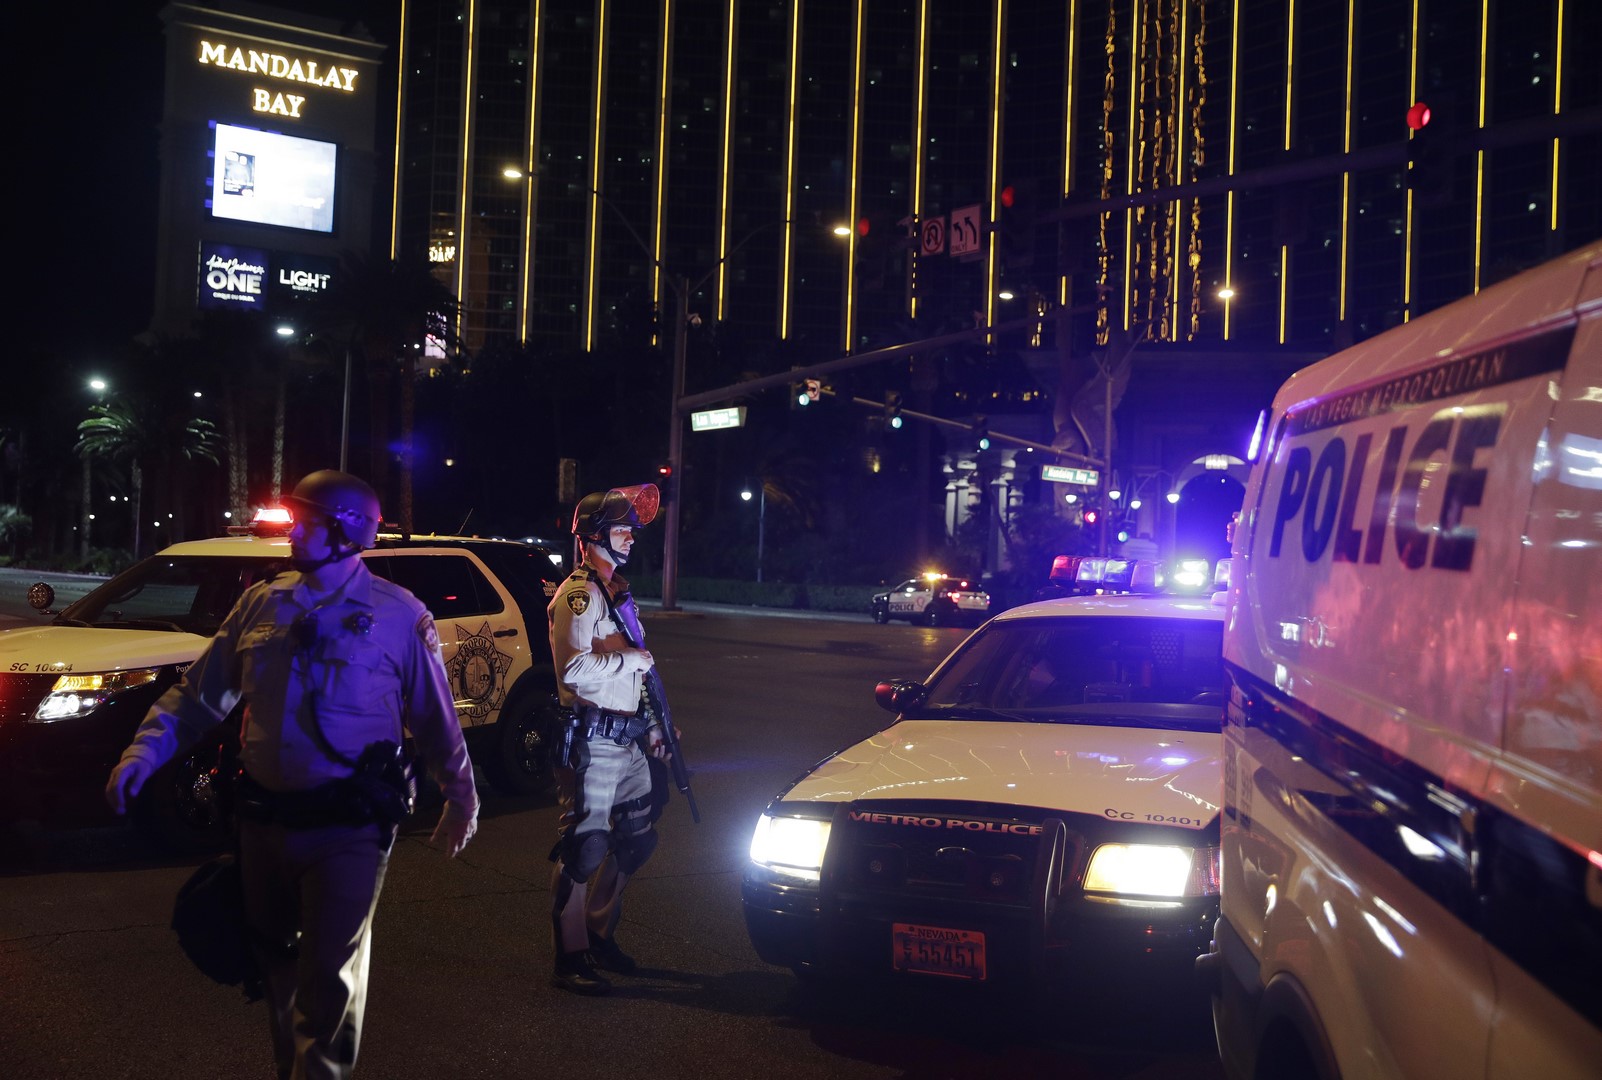 Autoridades identifican al tirador de Las Vegas como Stephen Paddock. (AP)